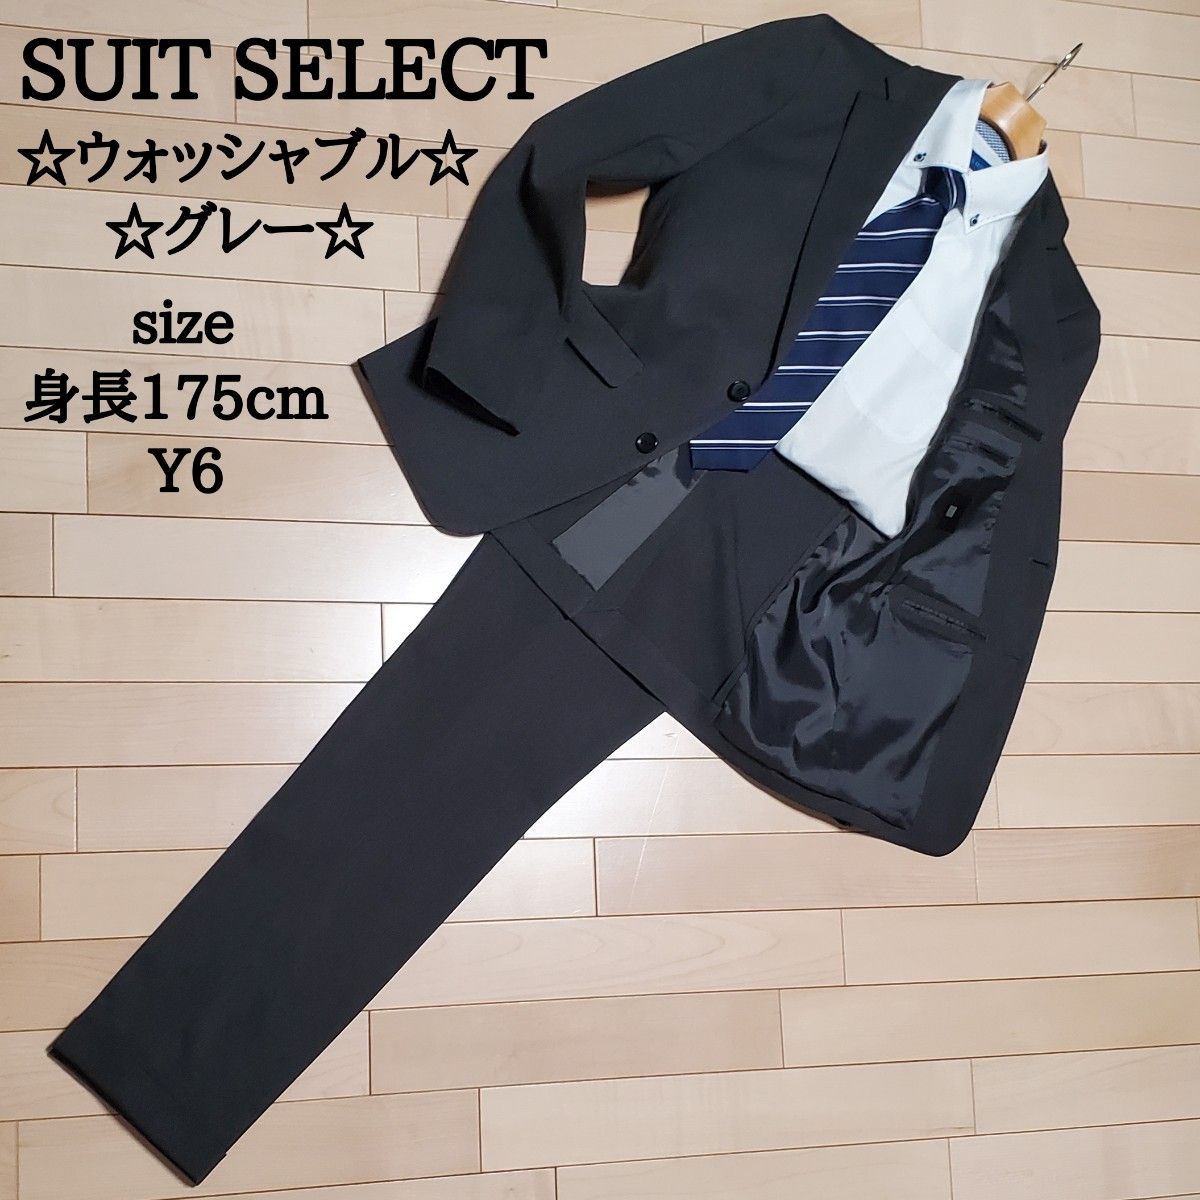 SUIT SELECT スーツセレクト メンズ ビジネス スーツ セットアップ